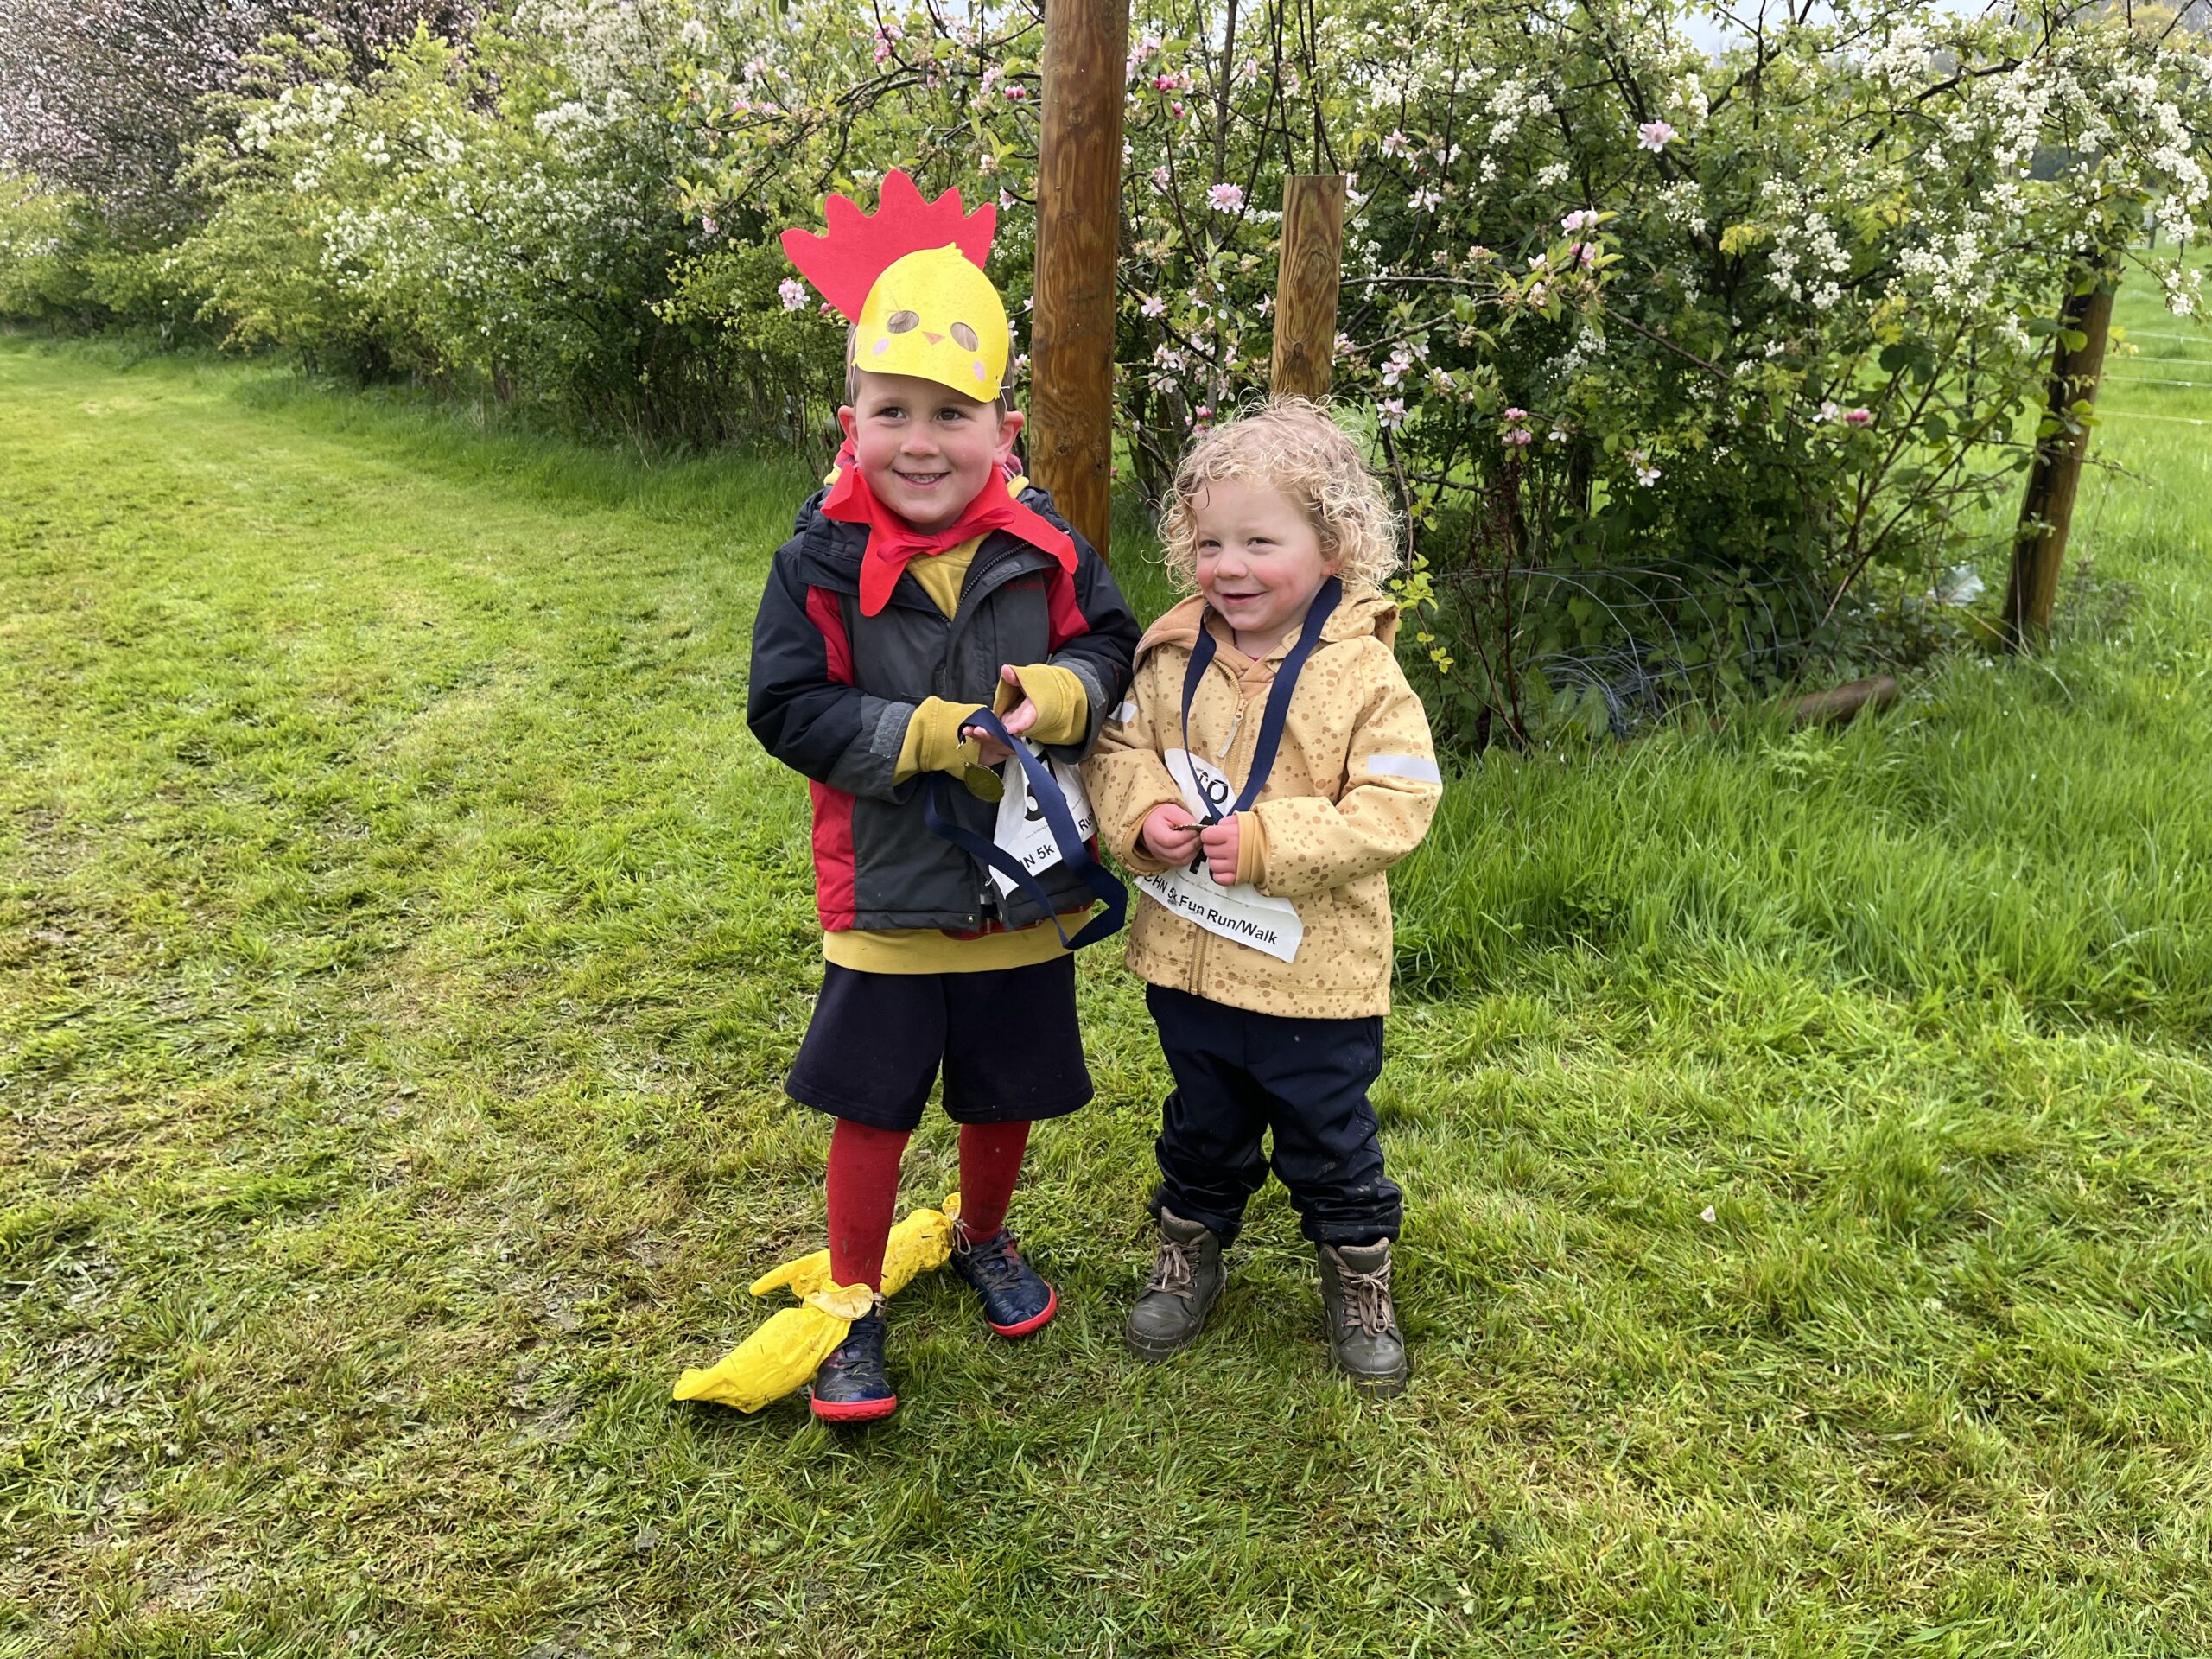 Two children with their Chicken Run medals